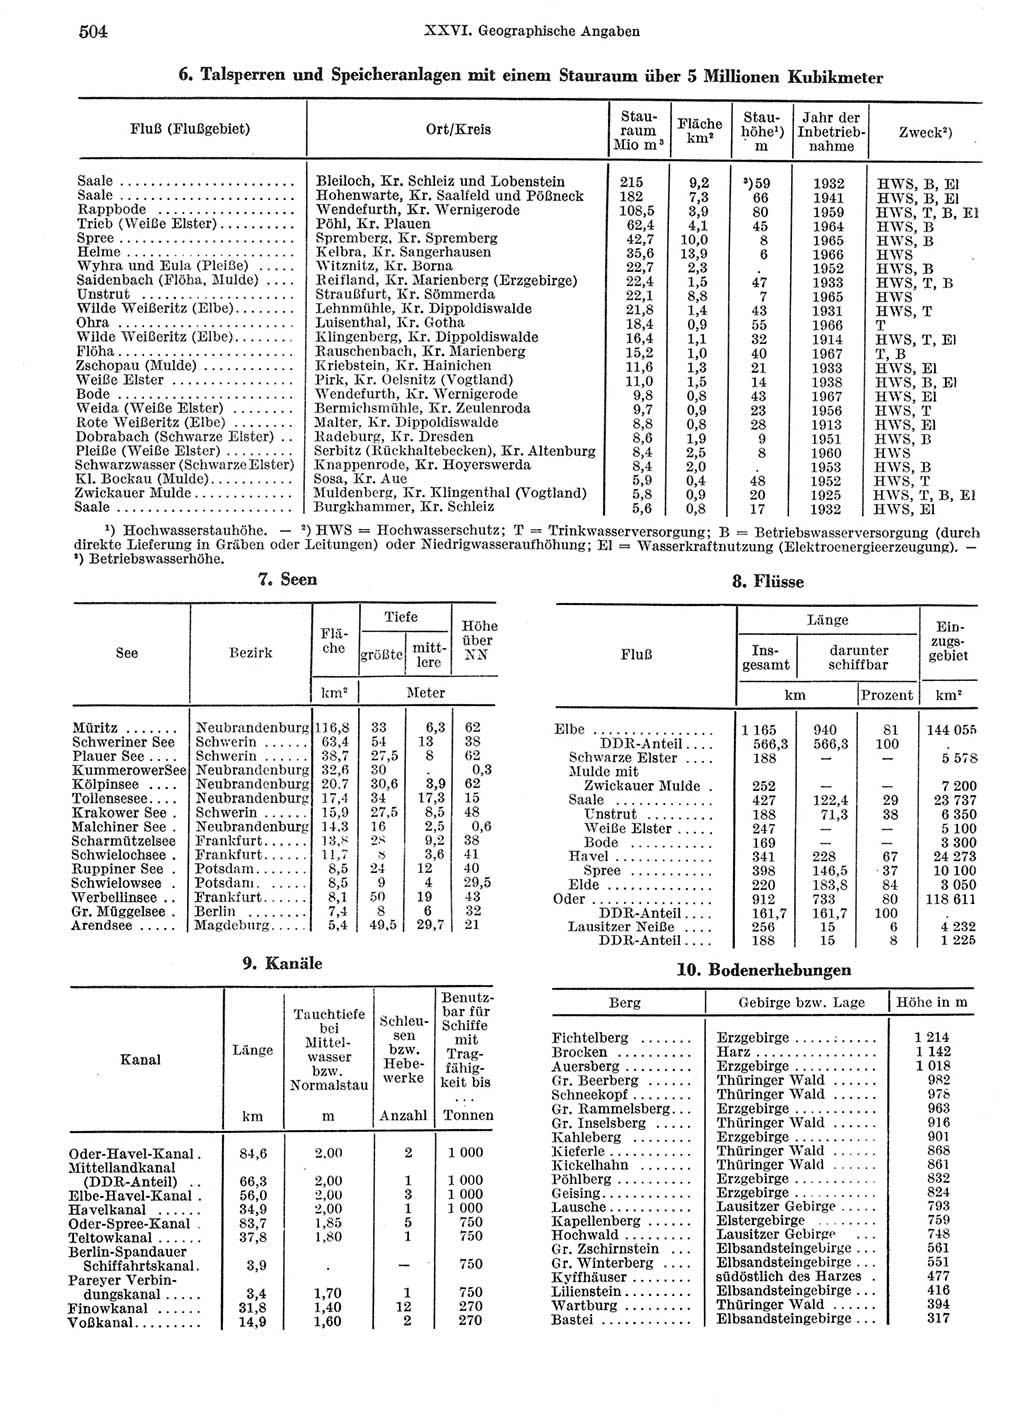 Statistisches Jahrbuch der Deutschen Demokratischen Republik (DDR) 1969, Seite 504 (Stat. Jb. DDR 1969, S. 504)